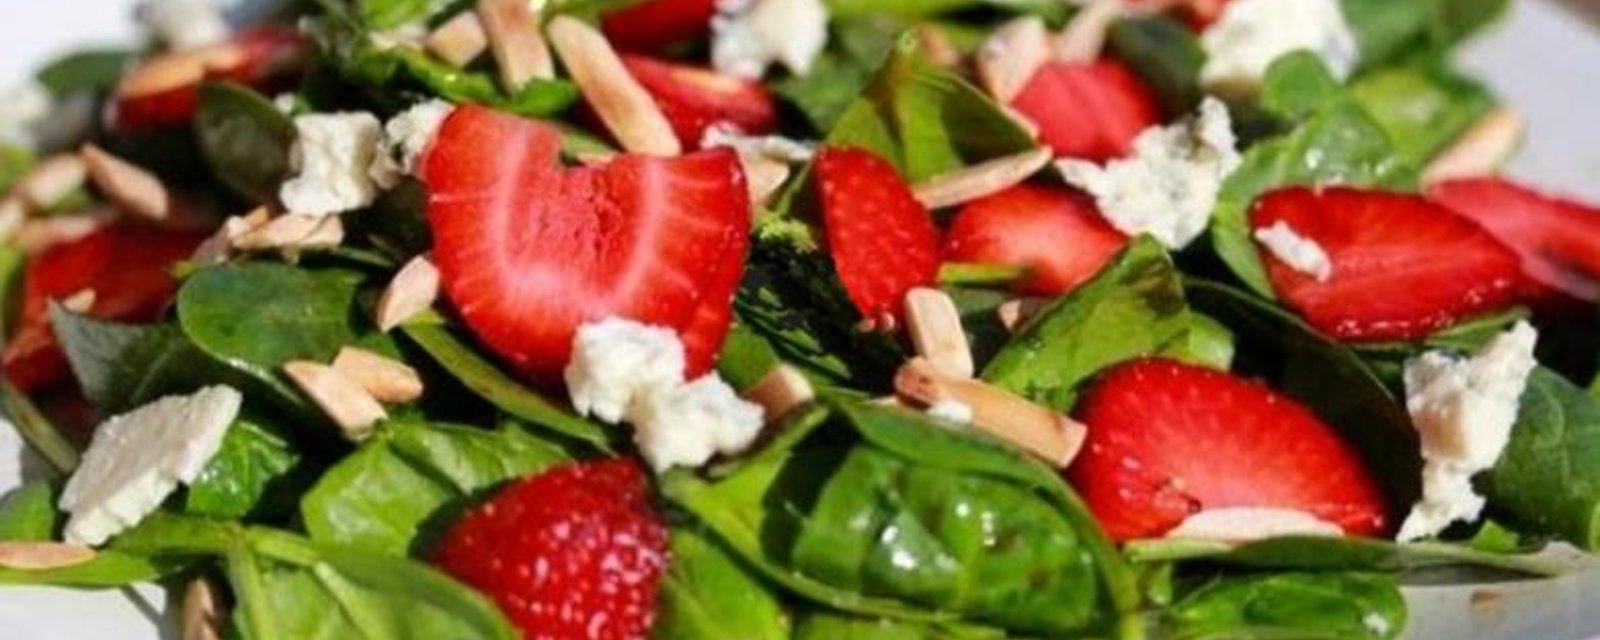 Salade d'épinards aux fraises et pacanes grillées